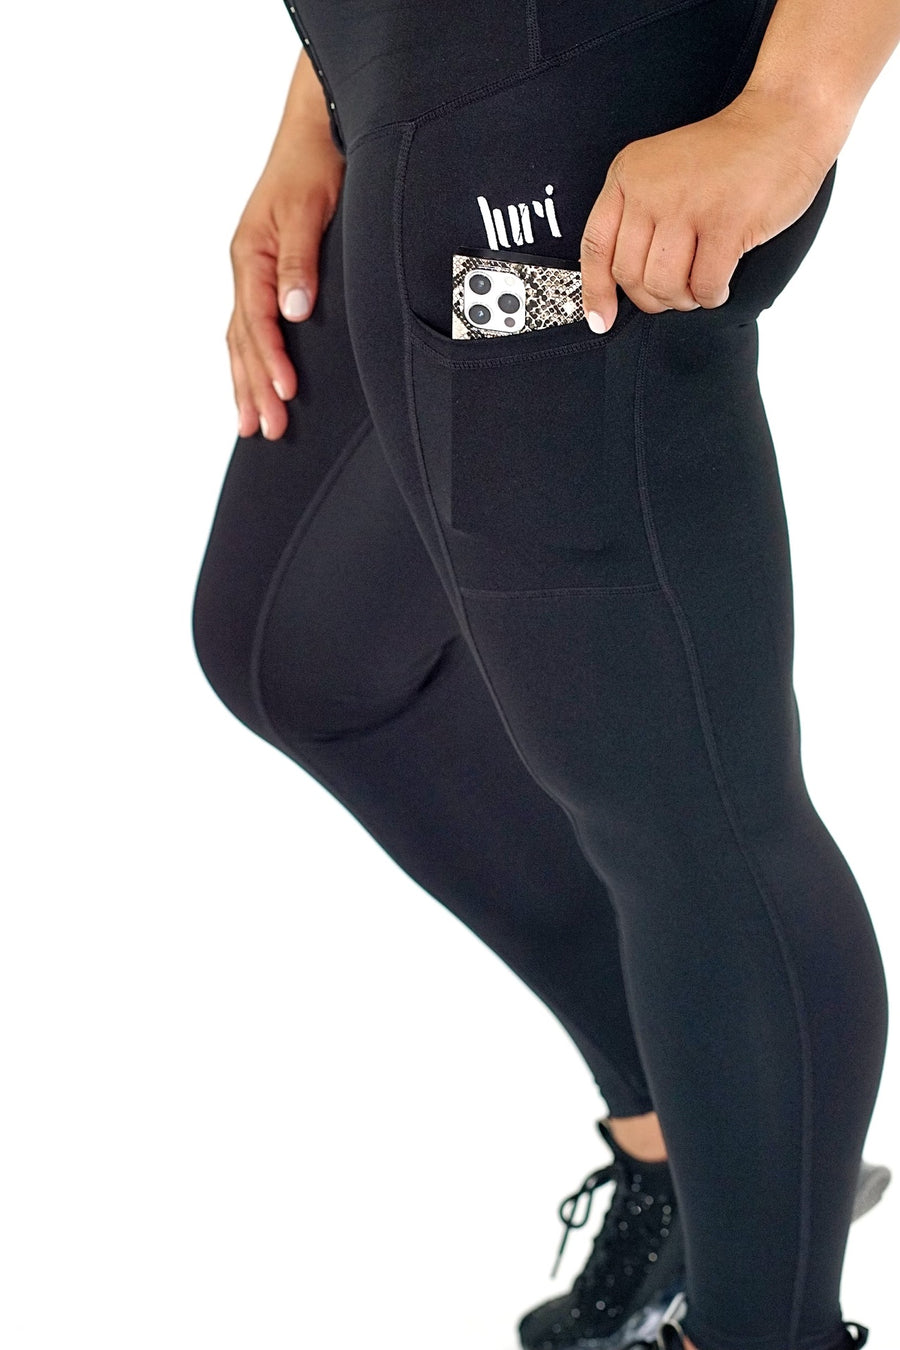 Active Postpartum Compression Legging  Compression leggings, Compression  garment, Active wear leggings